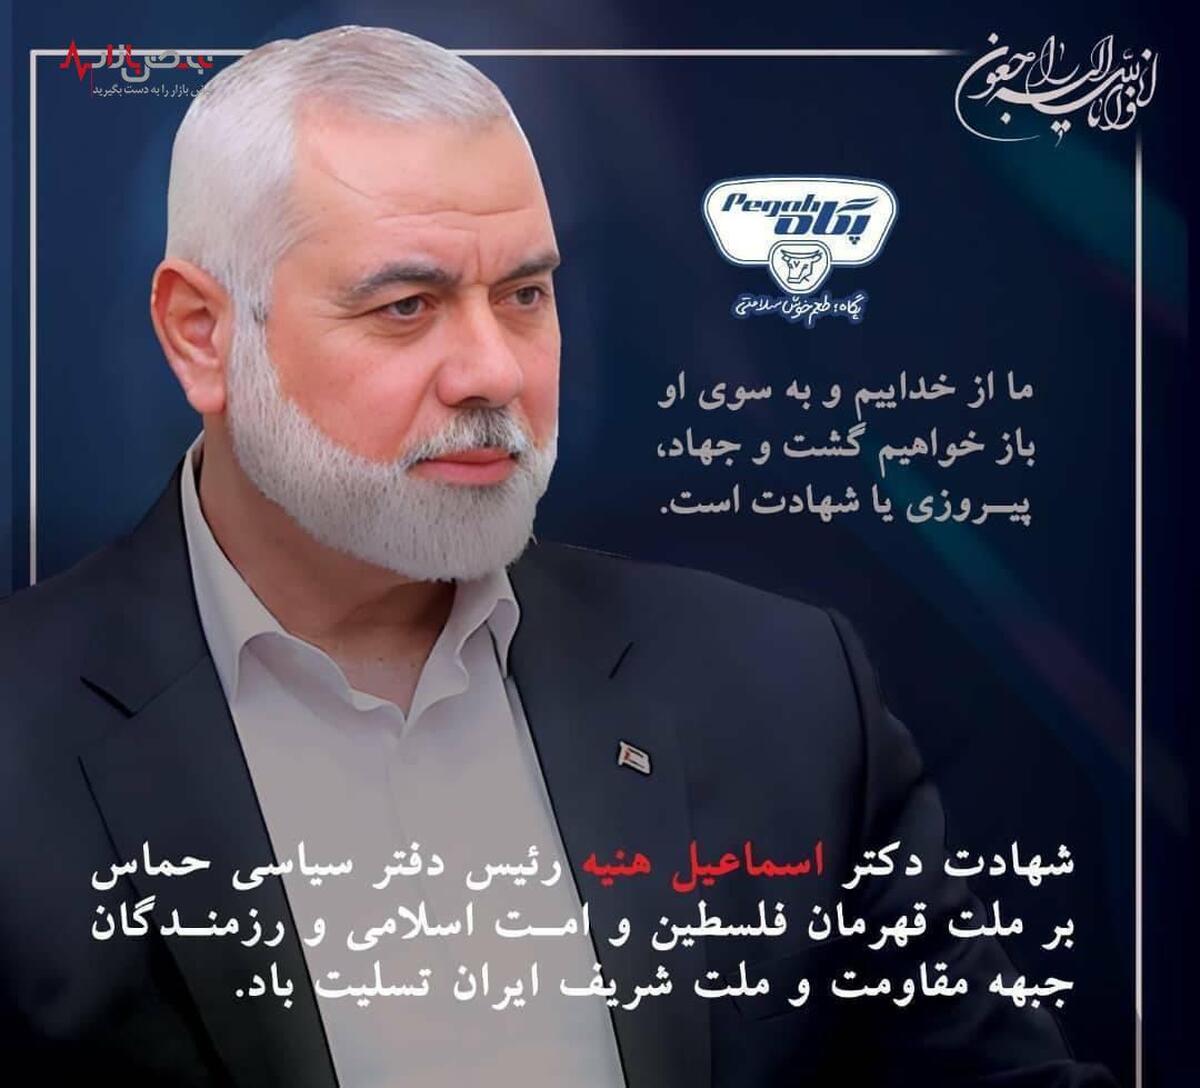 بیانیه شرکت صنایع شیر ایران در پی شهادت اسماعیل هنیه رئیس دفتر سیاسی جنبش حماس